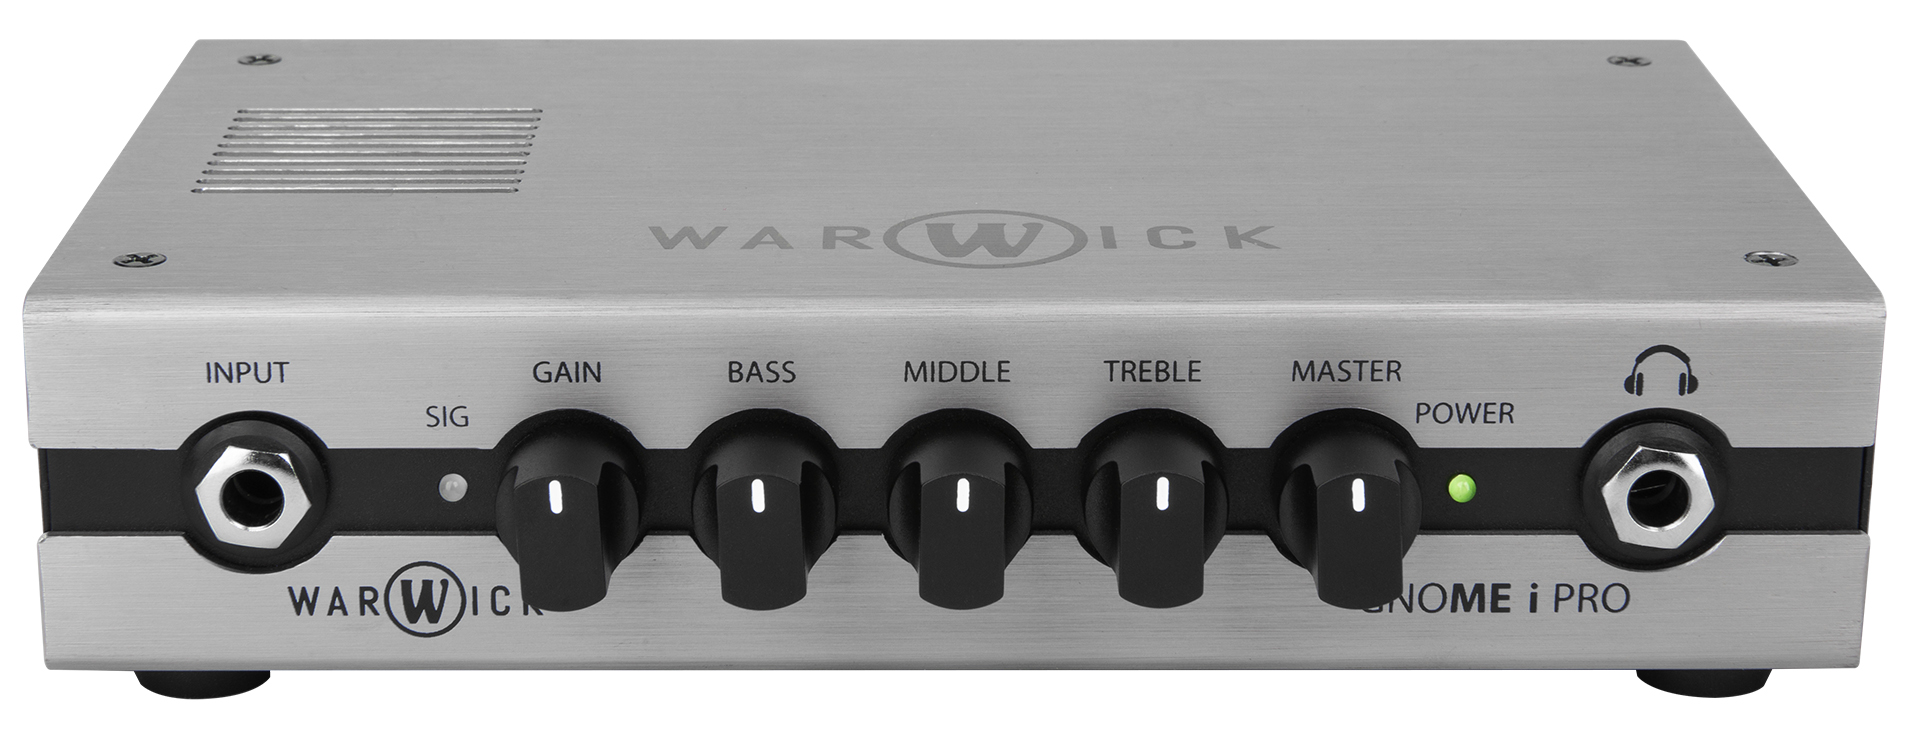 Warwick Gnome I Pro Usb  280w - Cabezal para bajo - Variation 2